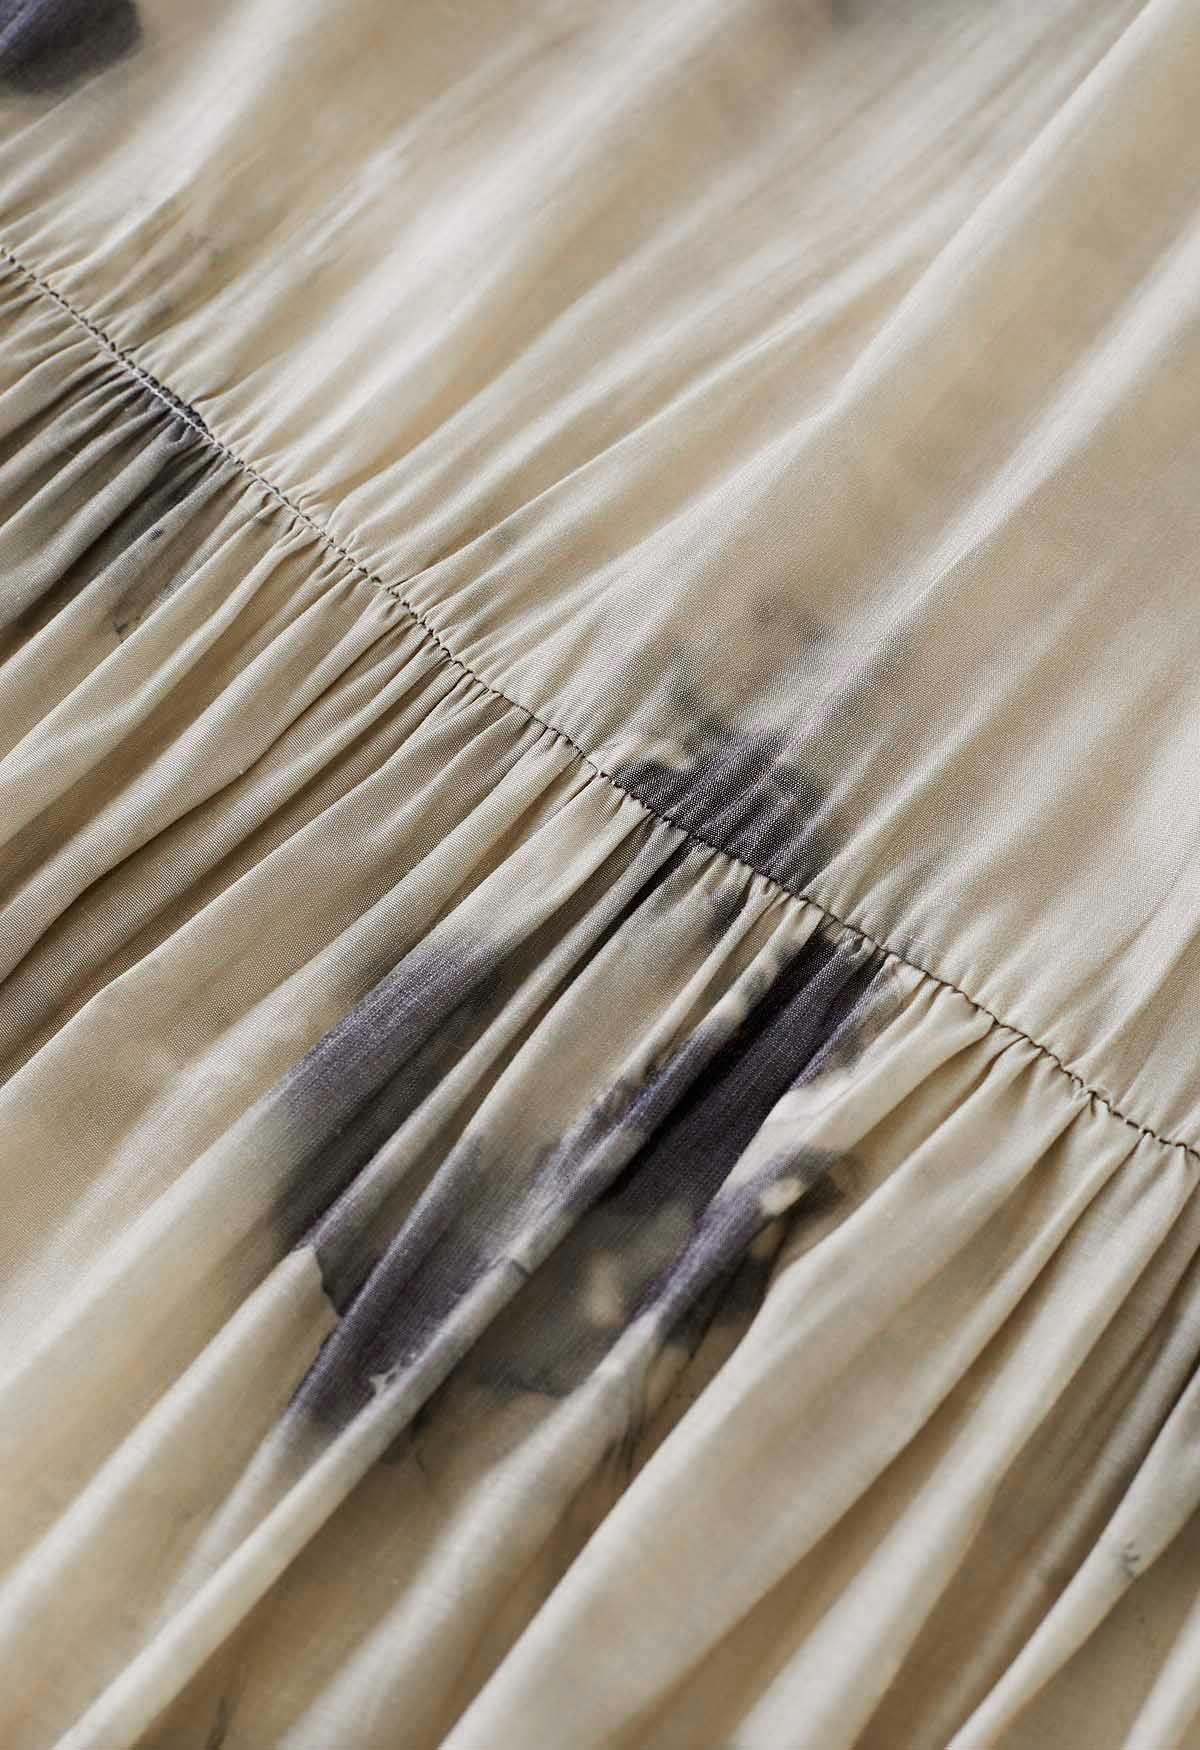 Glattes Neckholder-Kleid mit Tuschemalerei